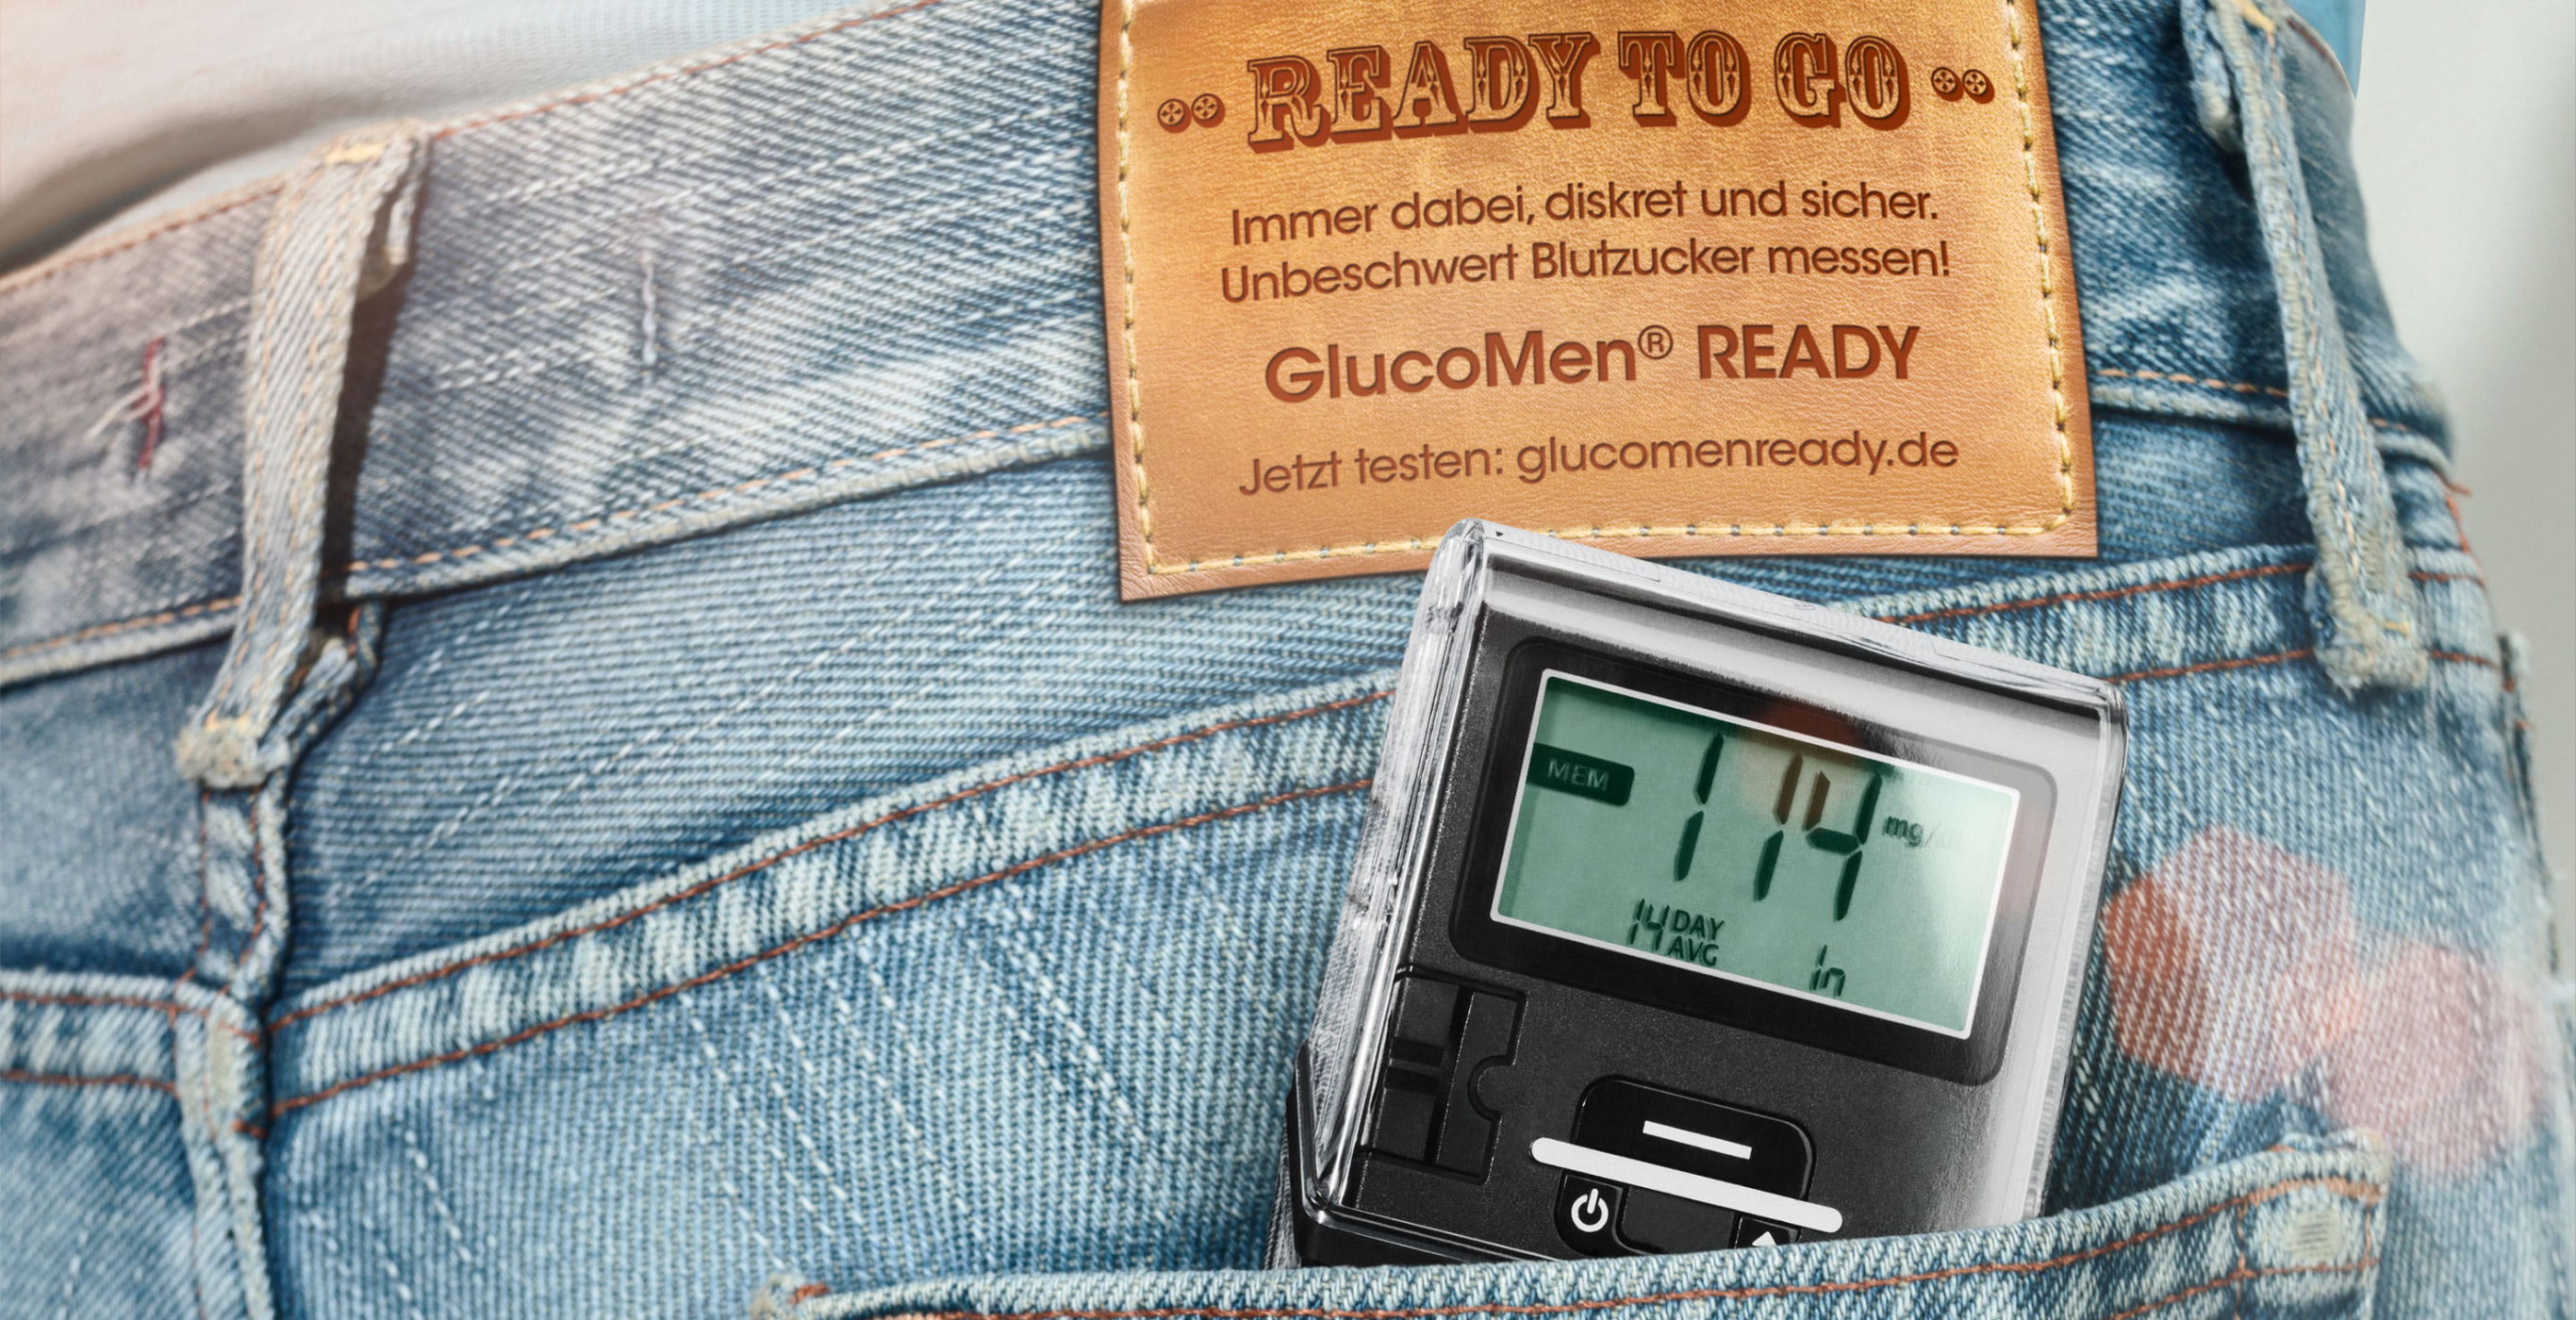 Key Visual des Product Launchs der Healthcare Werbeangentur mcs mit dem GlucoMen® READY in der Hosentasche